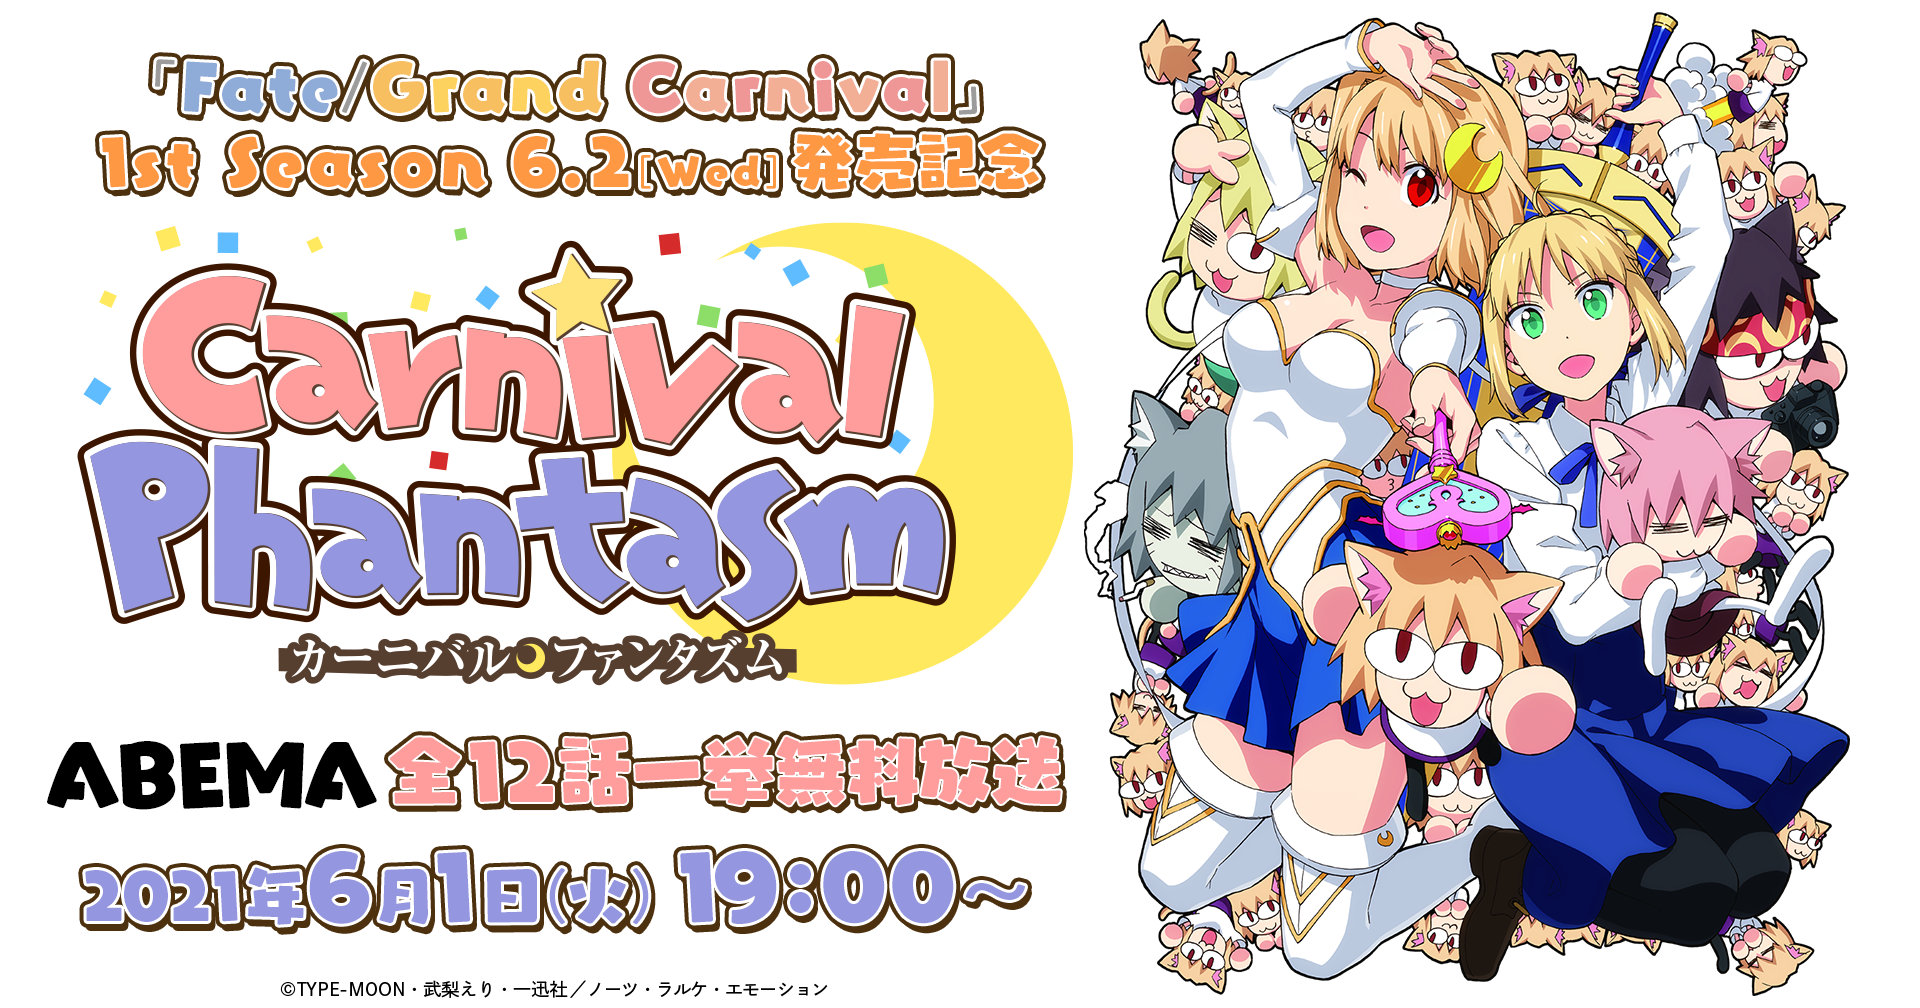 6 2 水 Ova Fate Grand Carnival 1st Season発売記念 カーニバル ファンタズム を6 1 火 19時よりabemaにて全12話を無料一挙放送 株式会社アニプレックスのプレスリリース